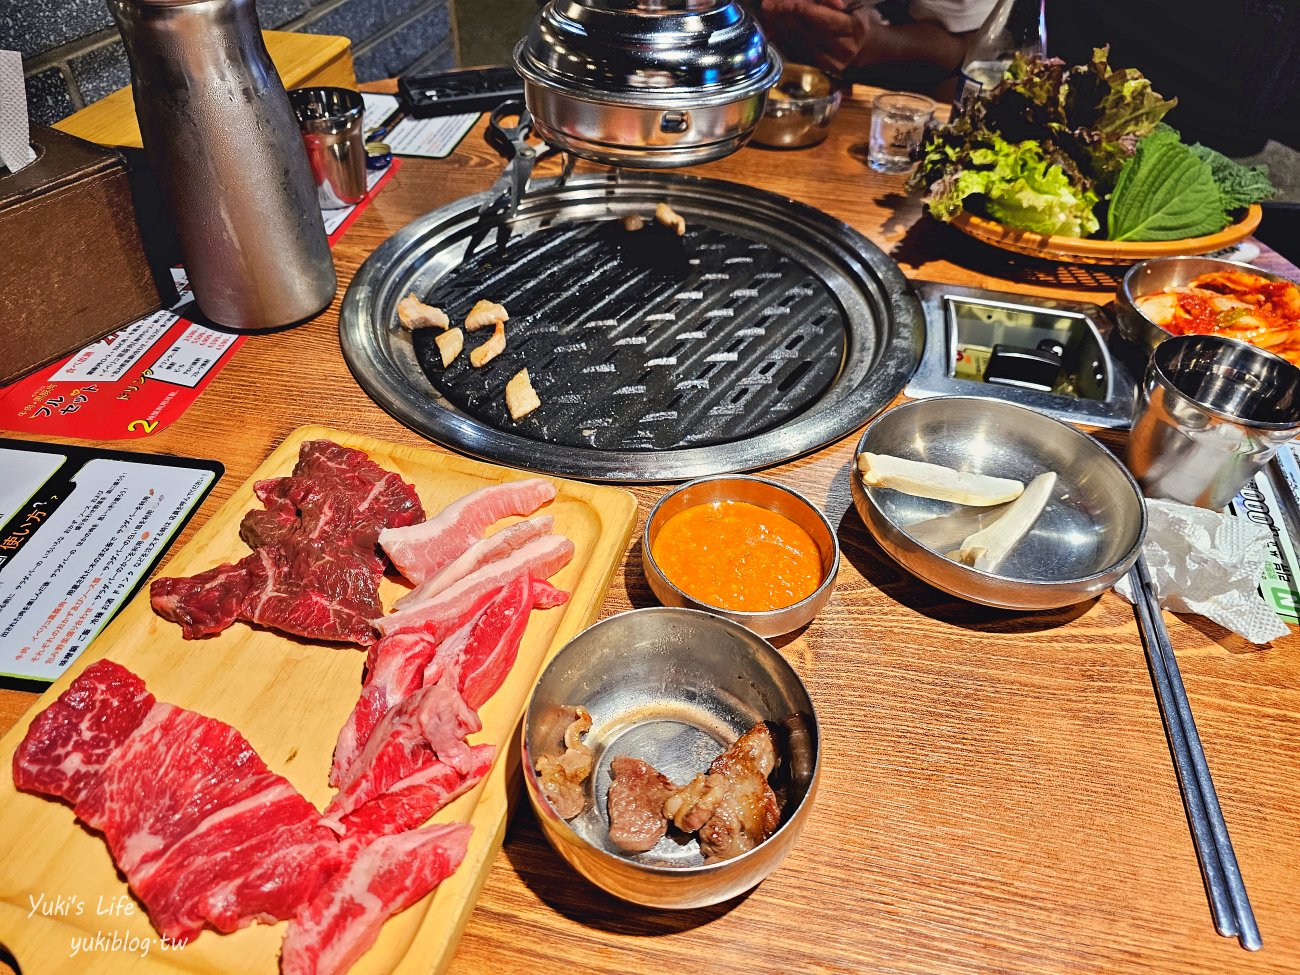 明洞必吃美食》韓式燒烤牛肉吃到飽，明洞燒肉推薦~想吃烤肉就來這兒~ - yukiblog.tw